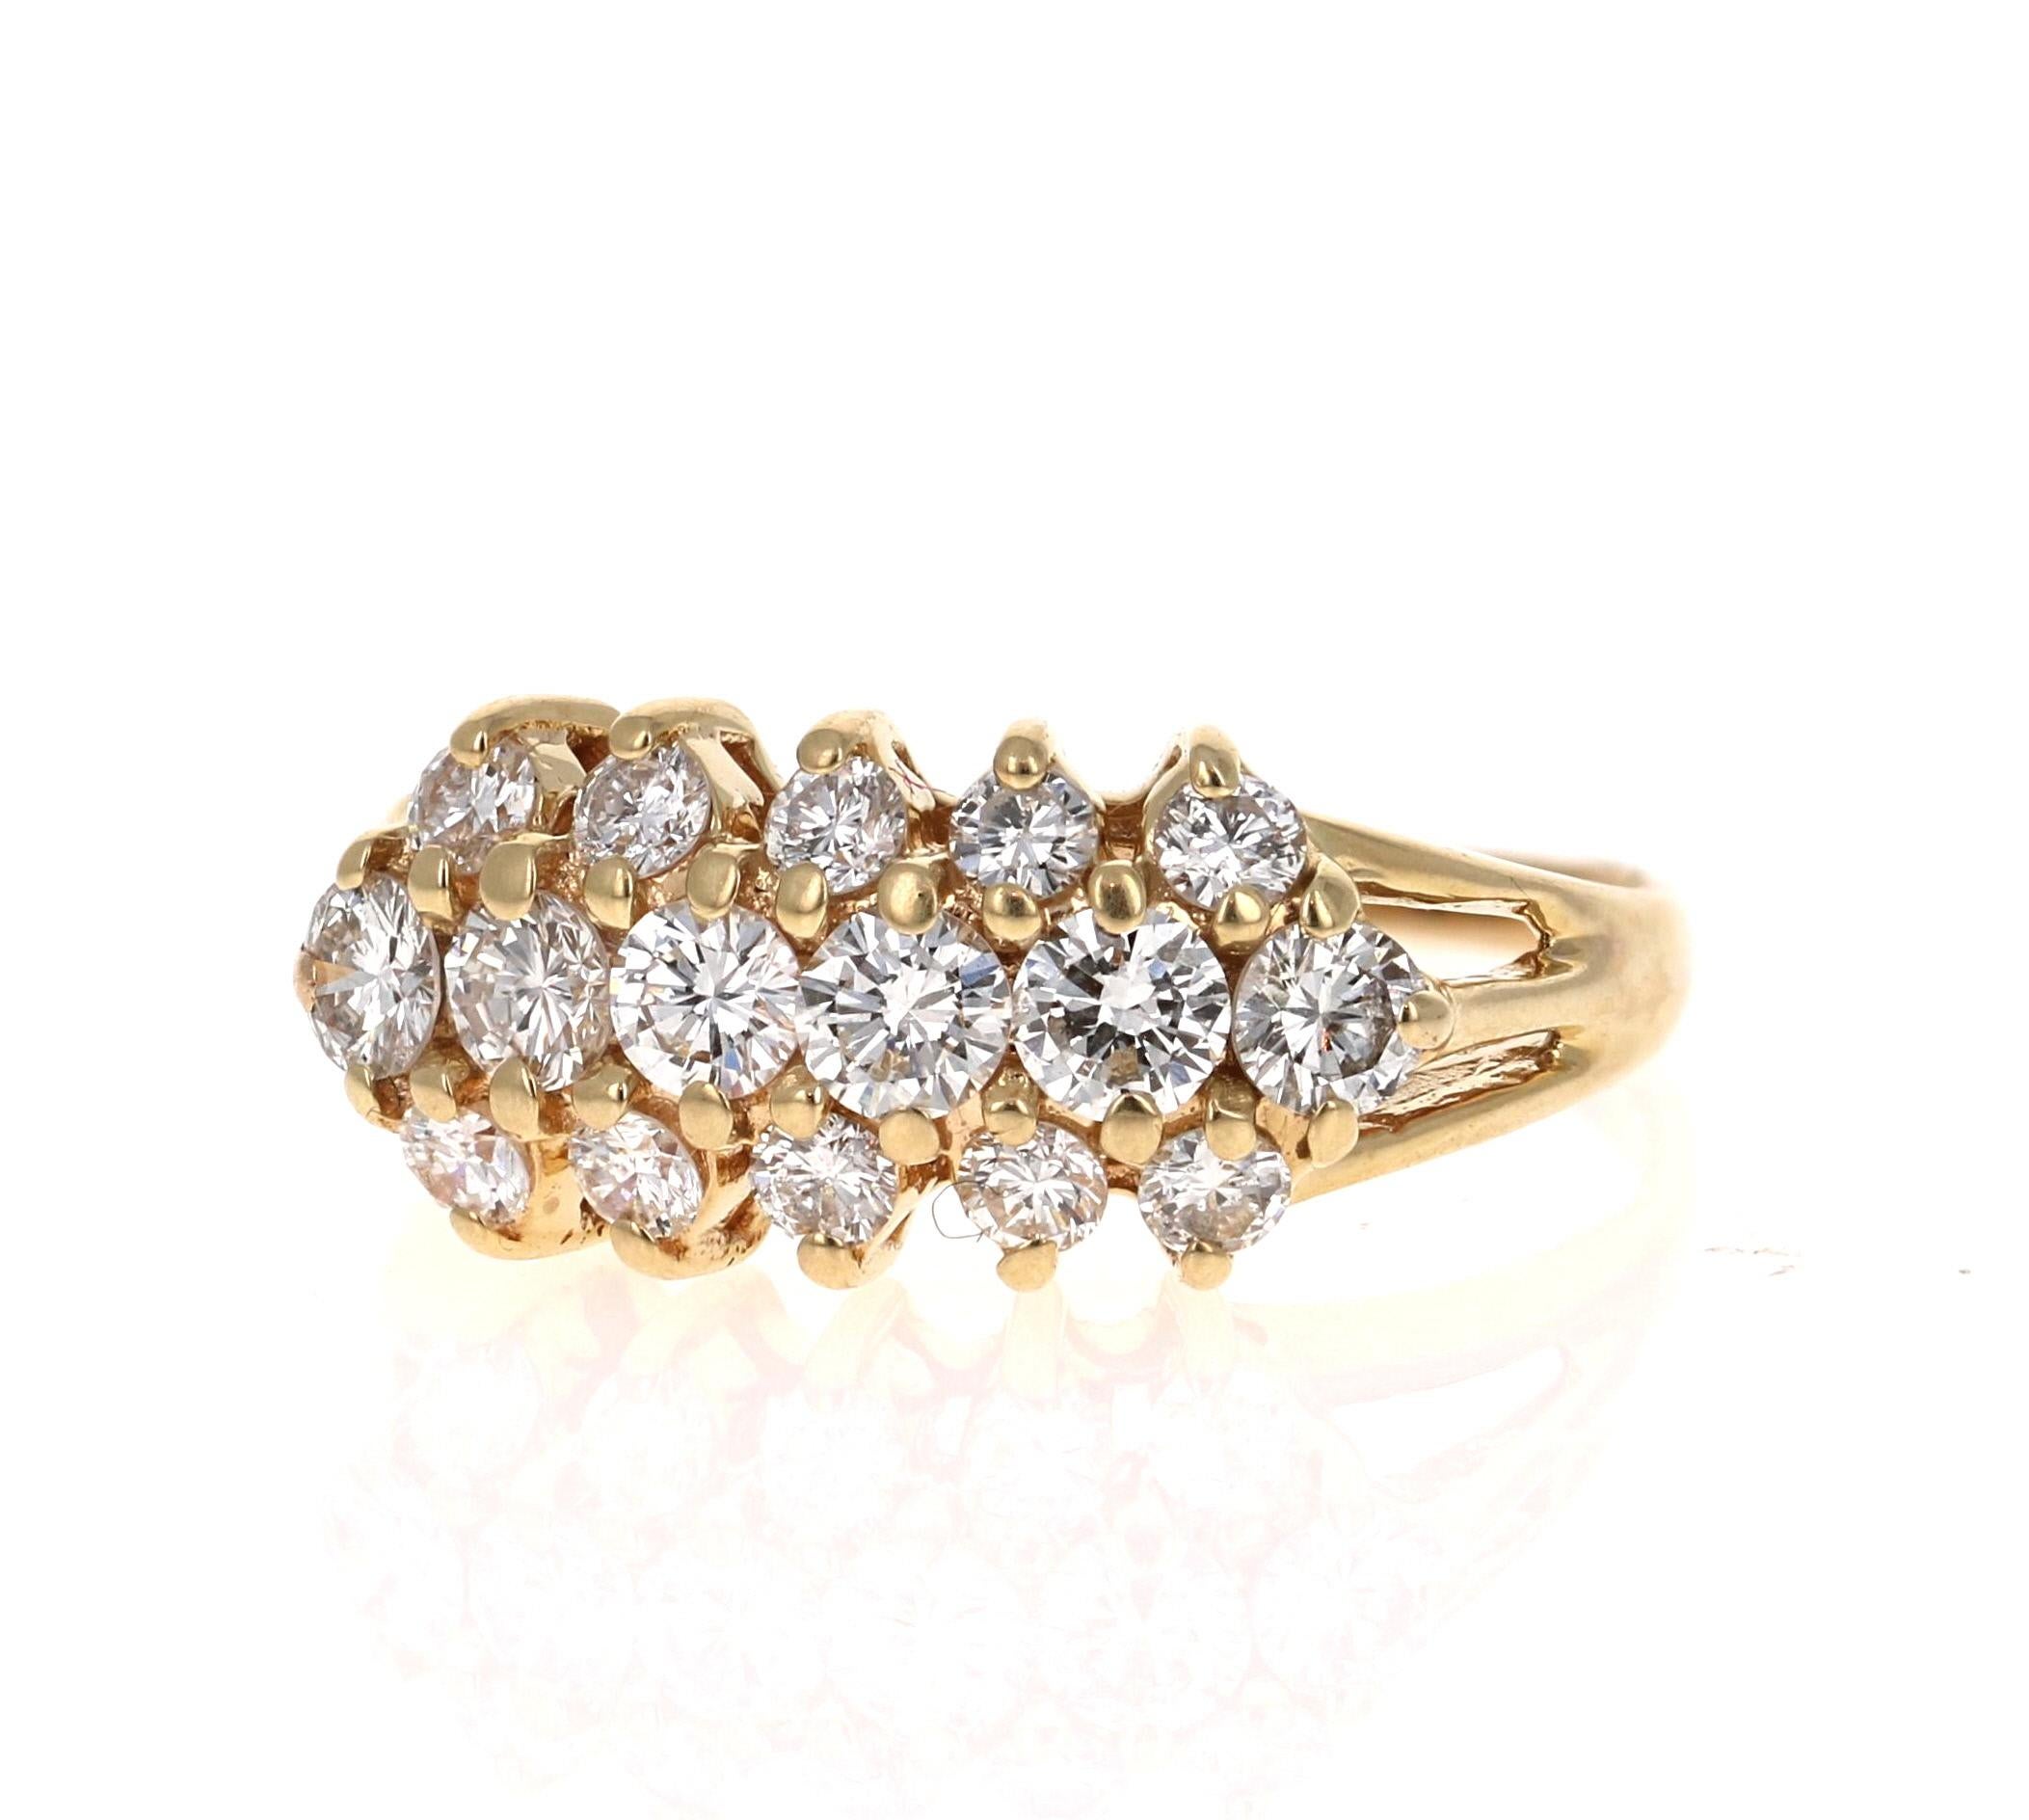 Dieser klassische Cluster-Ring hat 16 Diamanten im Rundschliff mit einem Gewicht von 1,01 Karat (VS-I) 
Der Ring ist in 14 Karat Gelbgold gefasst und hat ein ungefähres Gewicht von 3,3 Gramm. 

Der Ring hat die Größe 7 und kann bei Bedarf kostenlos